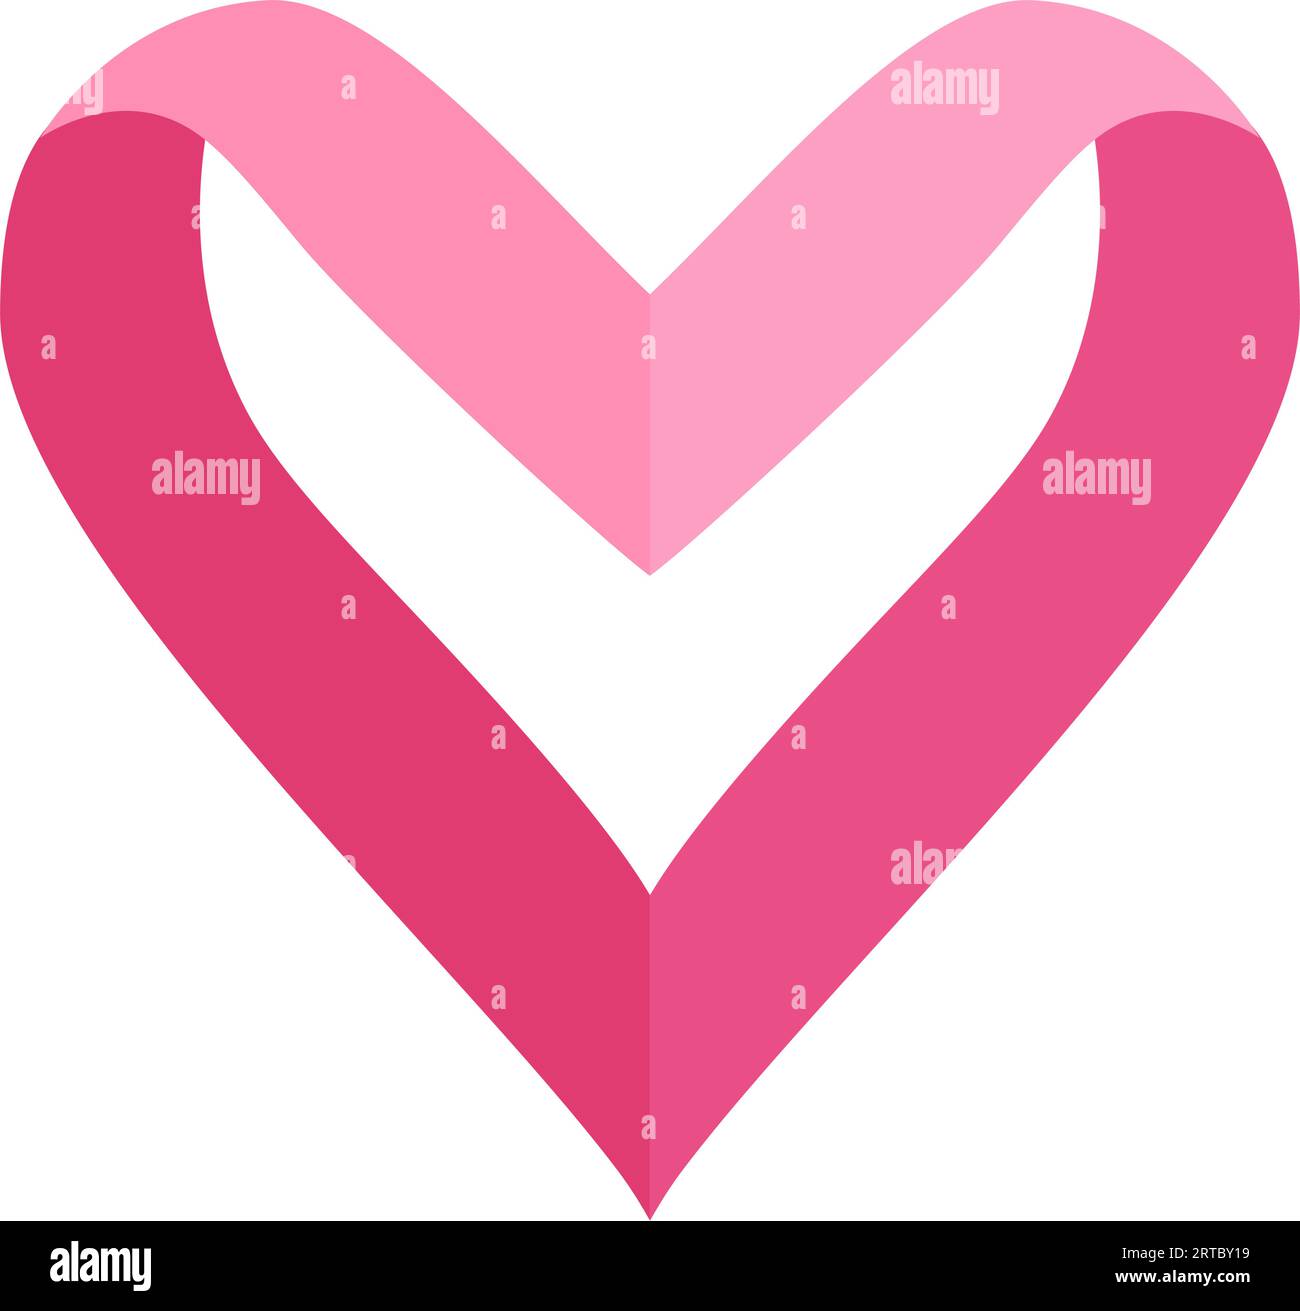 Pink ribbon heart shape symbol. vector illustration Stock Vector